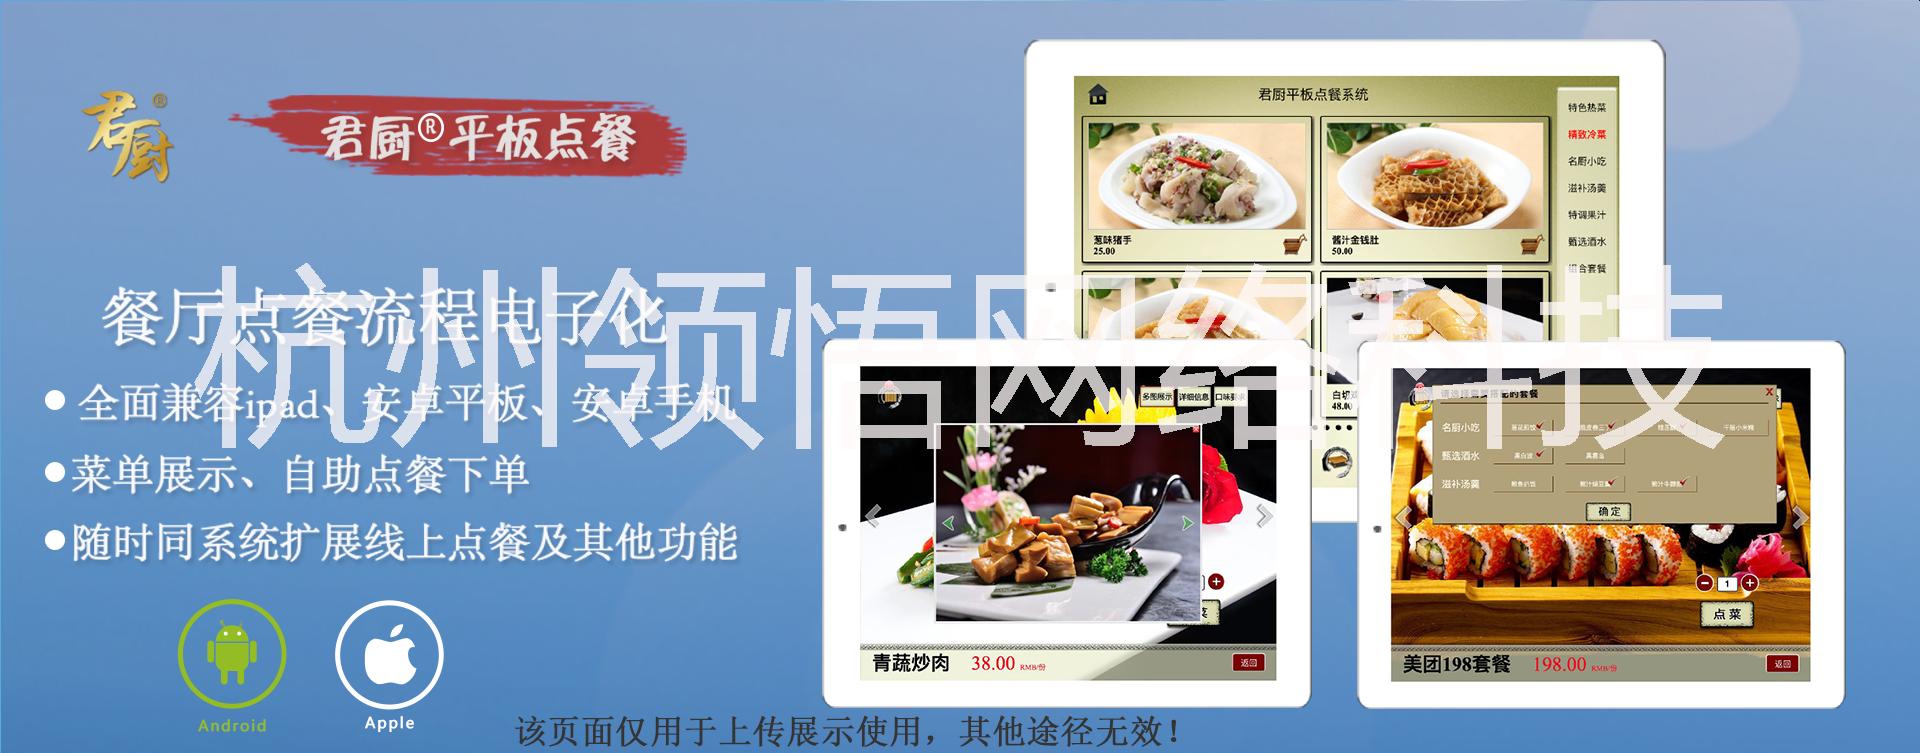 供应君厨电子点餐V.5.2 平板点餐PAD 点餐 无线点餐智能点餐 手机点餐图片